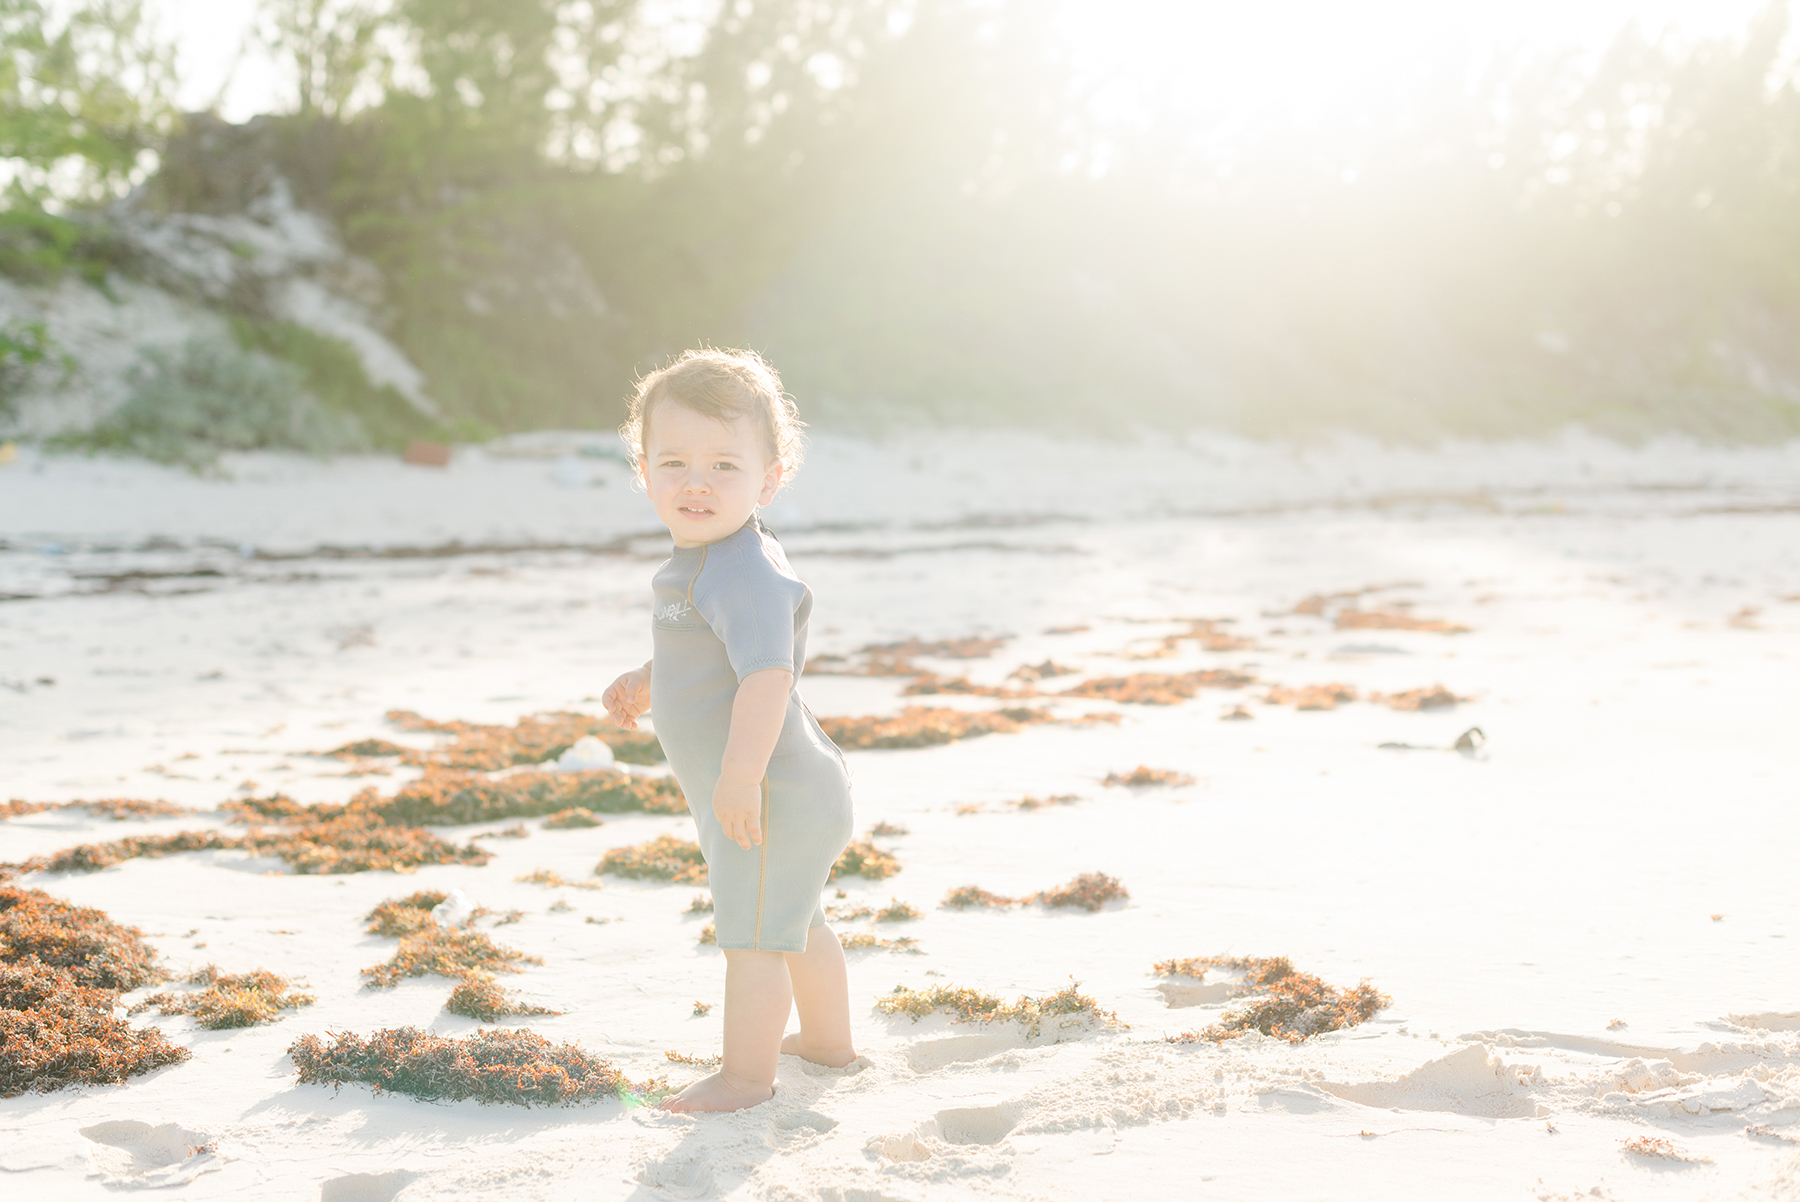 Cute-boy-smiling-on-beach